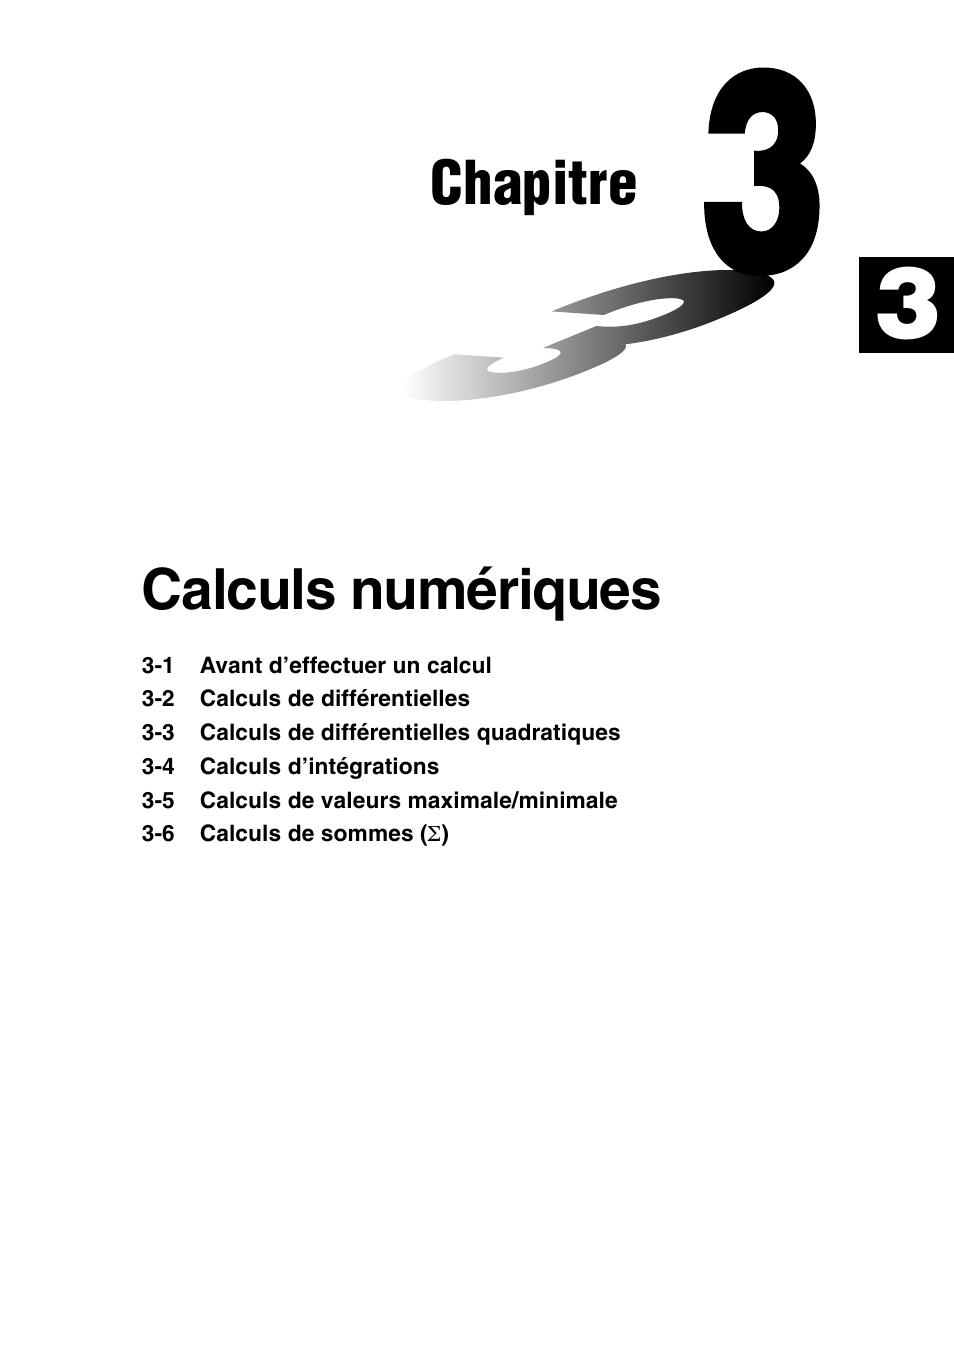 Chapitre, Calculs numériques | Casio GRAPH 35+ Manuel d'utilisation | Page 83 / 488